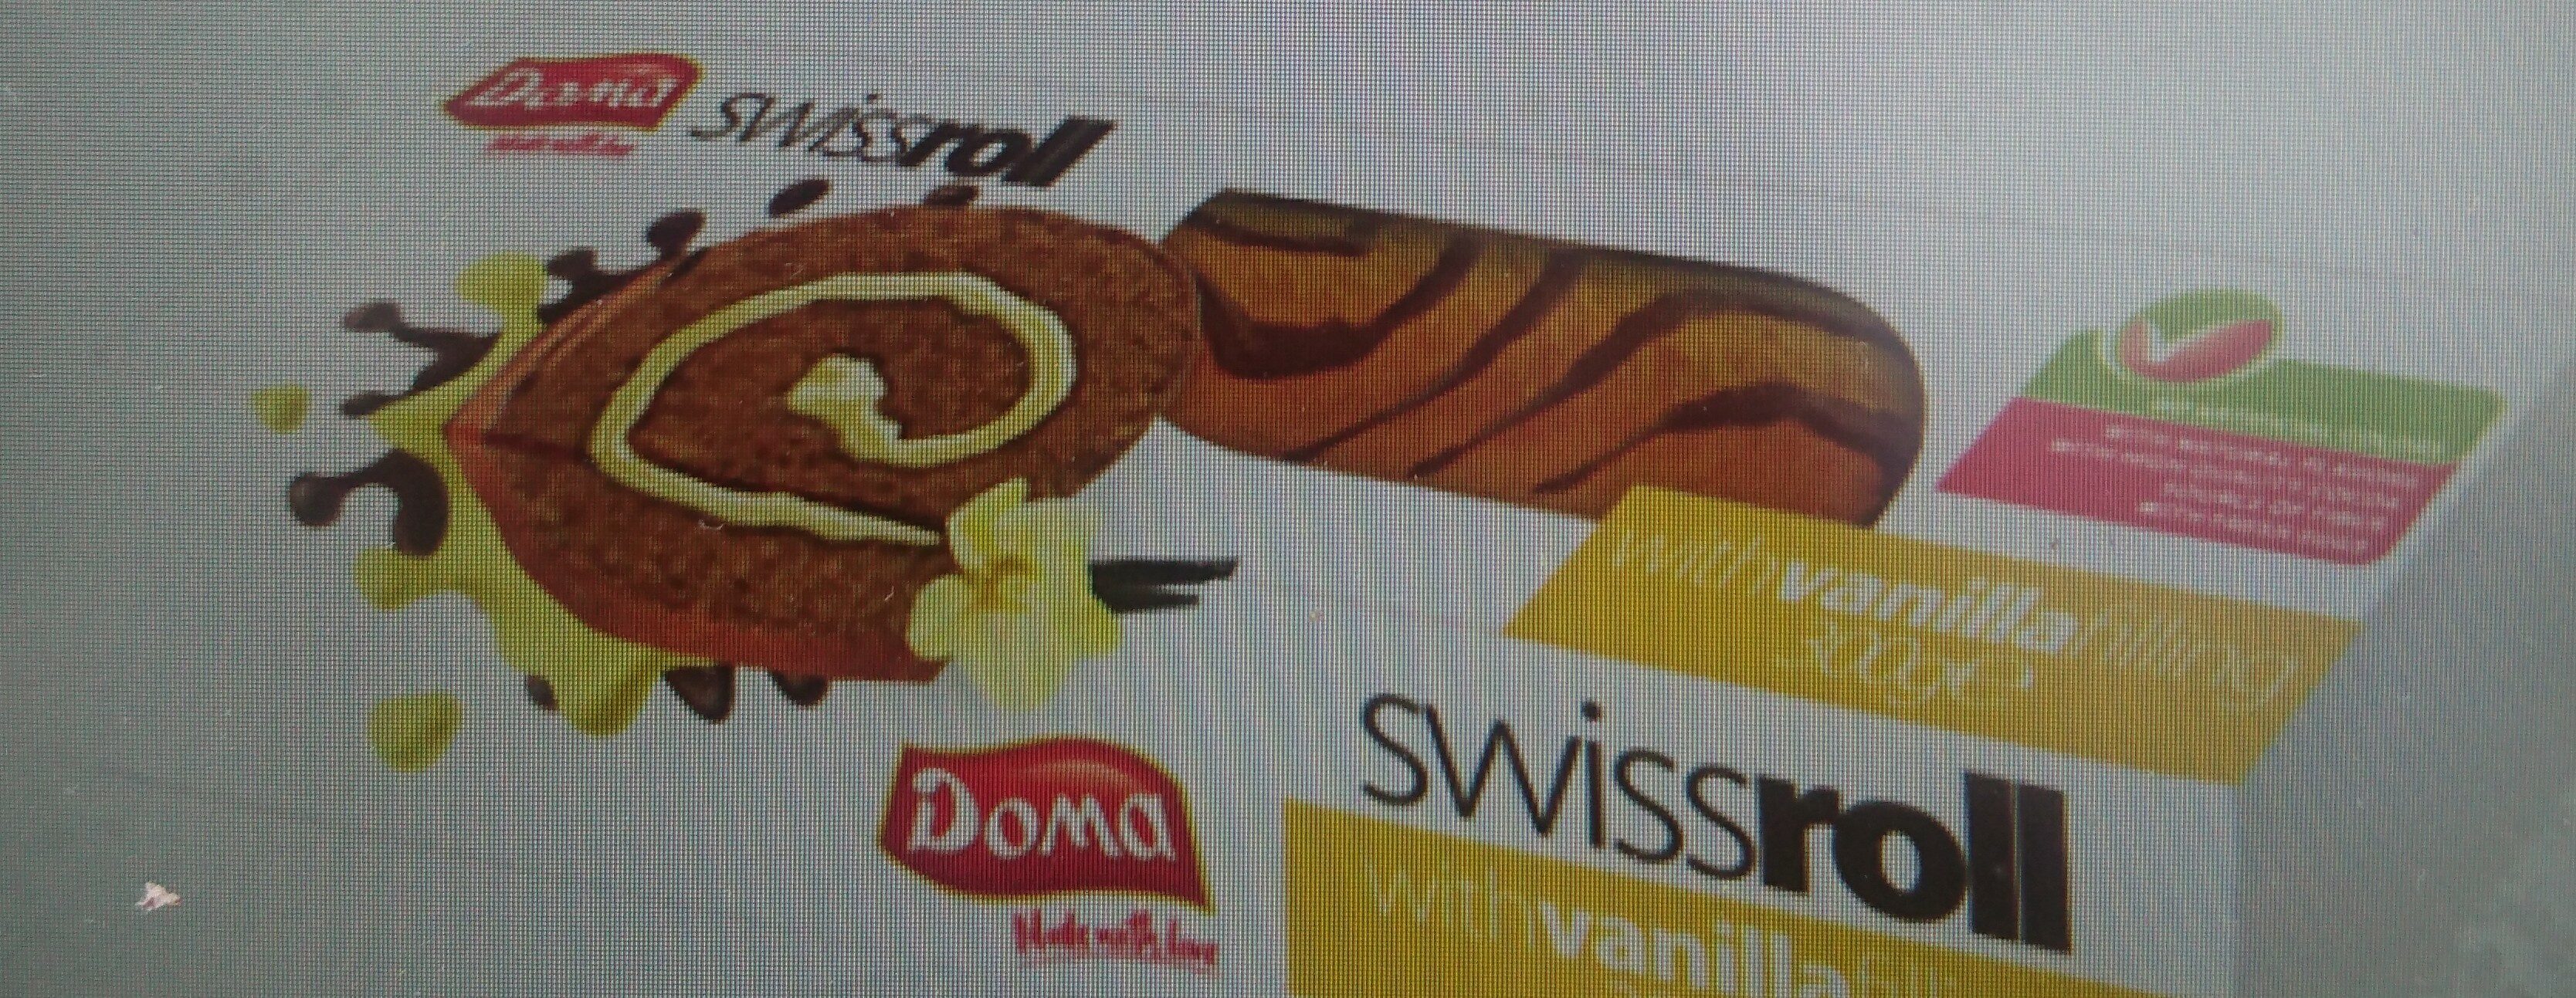 Swiss roll vanila - Продукт - en